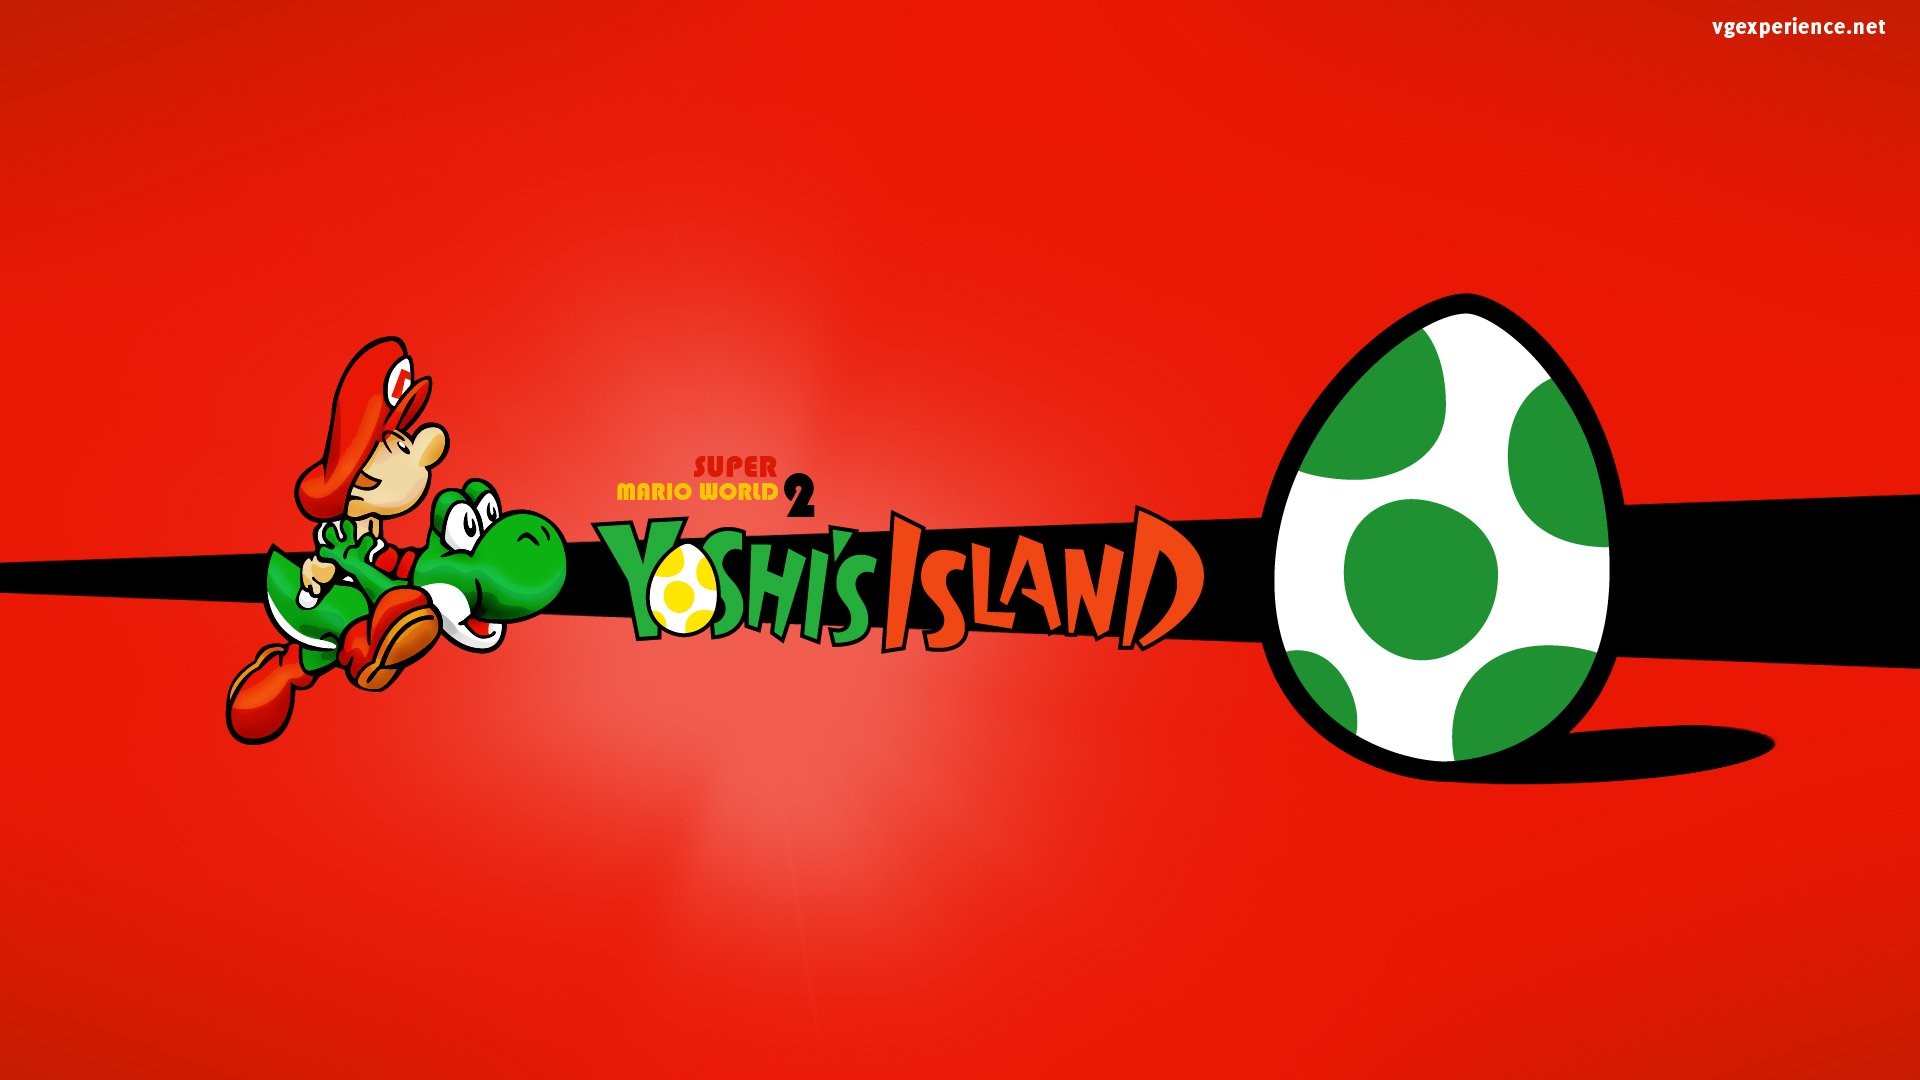 Mario yoshi island. Super Mario World 2 Yoshis Island. Yoshi на обои. Йоши super Mario World. Марио обои.